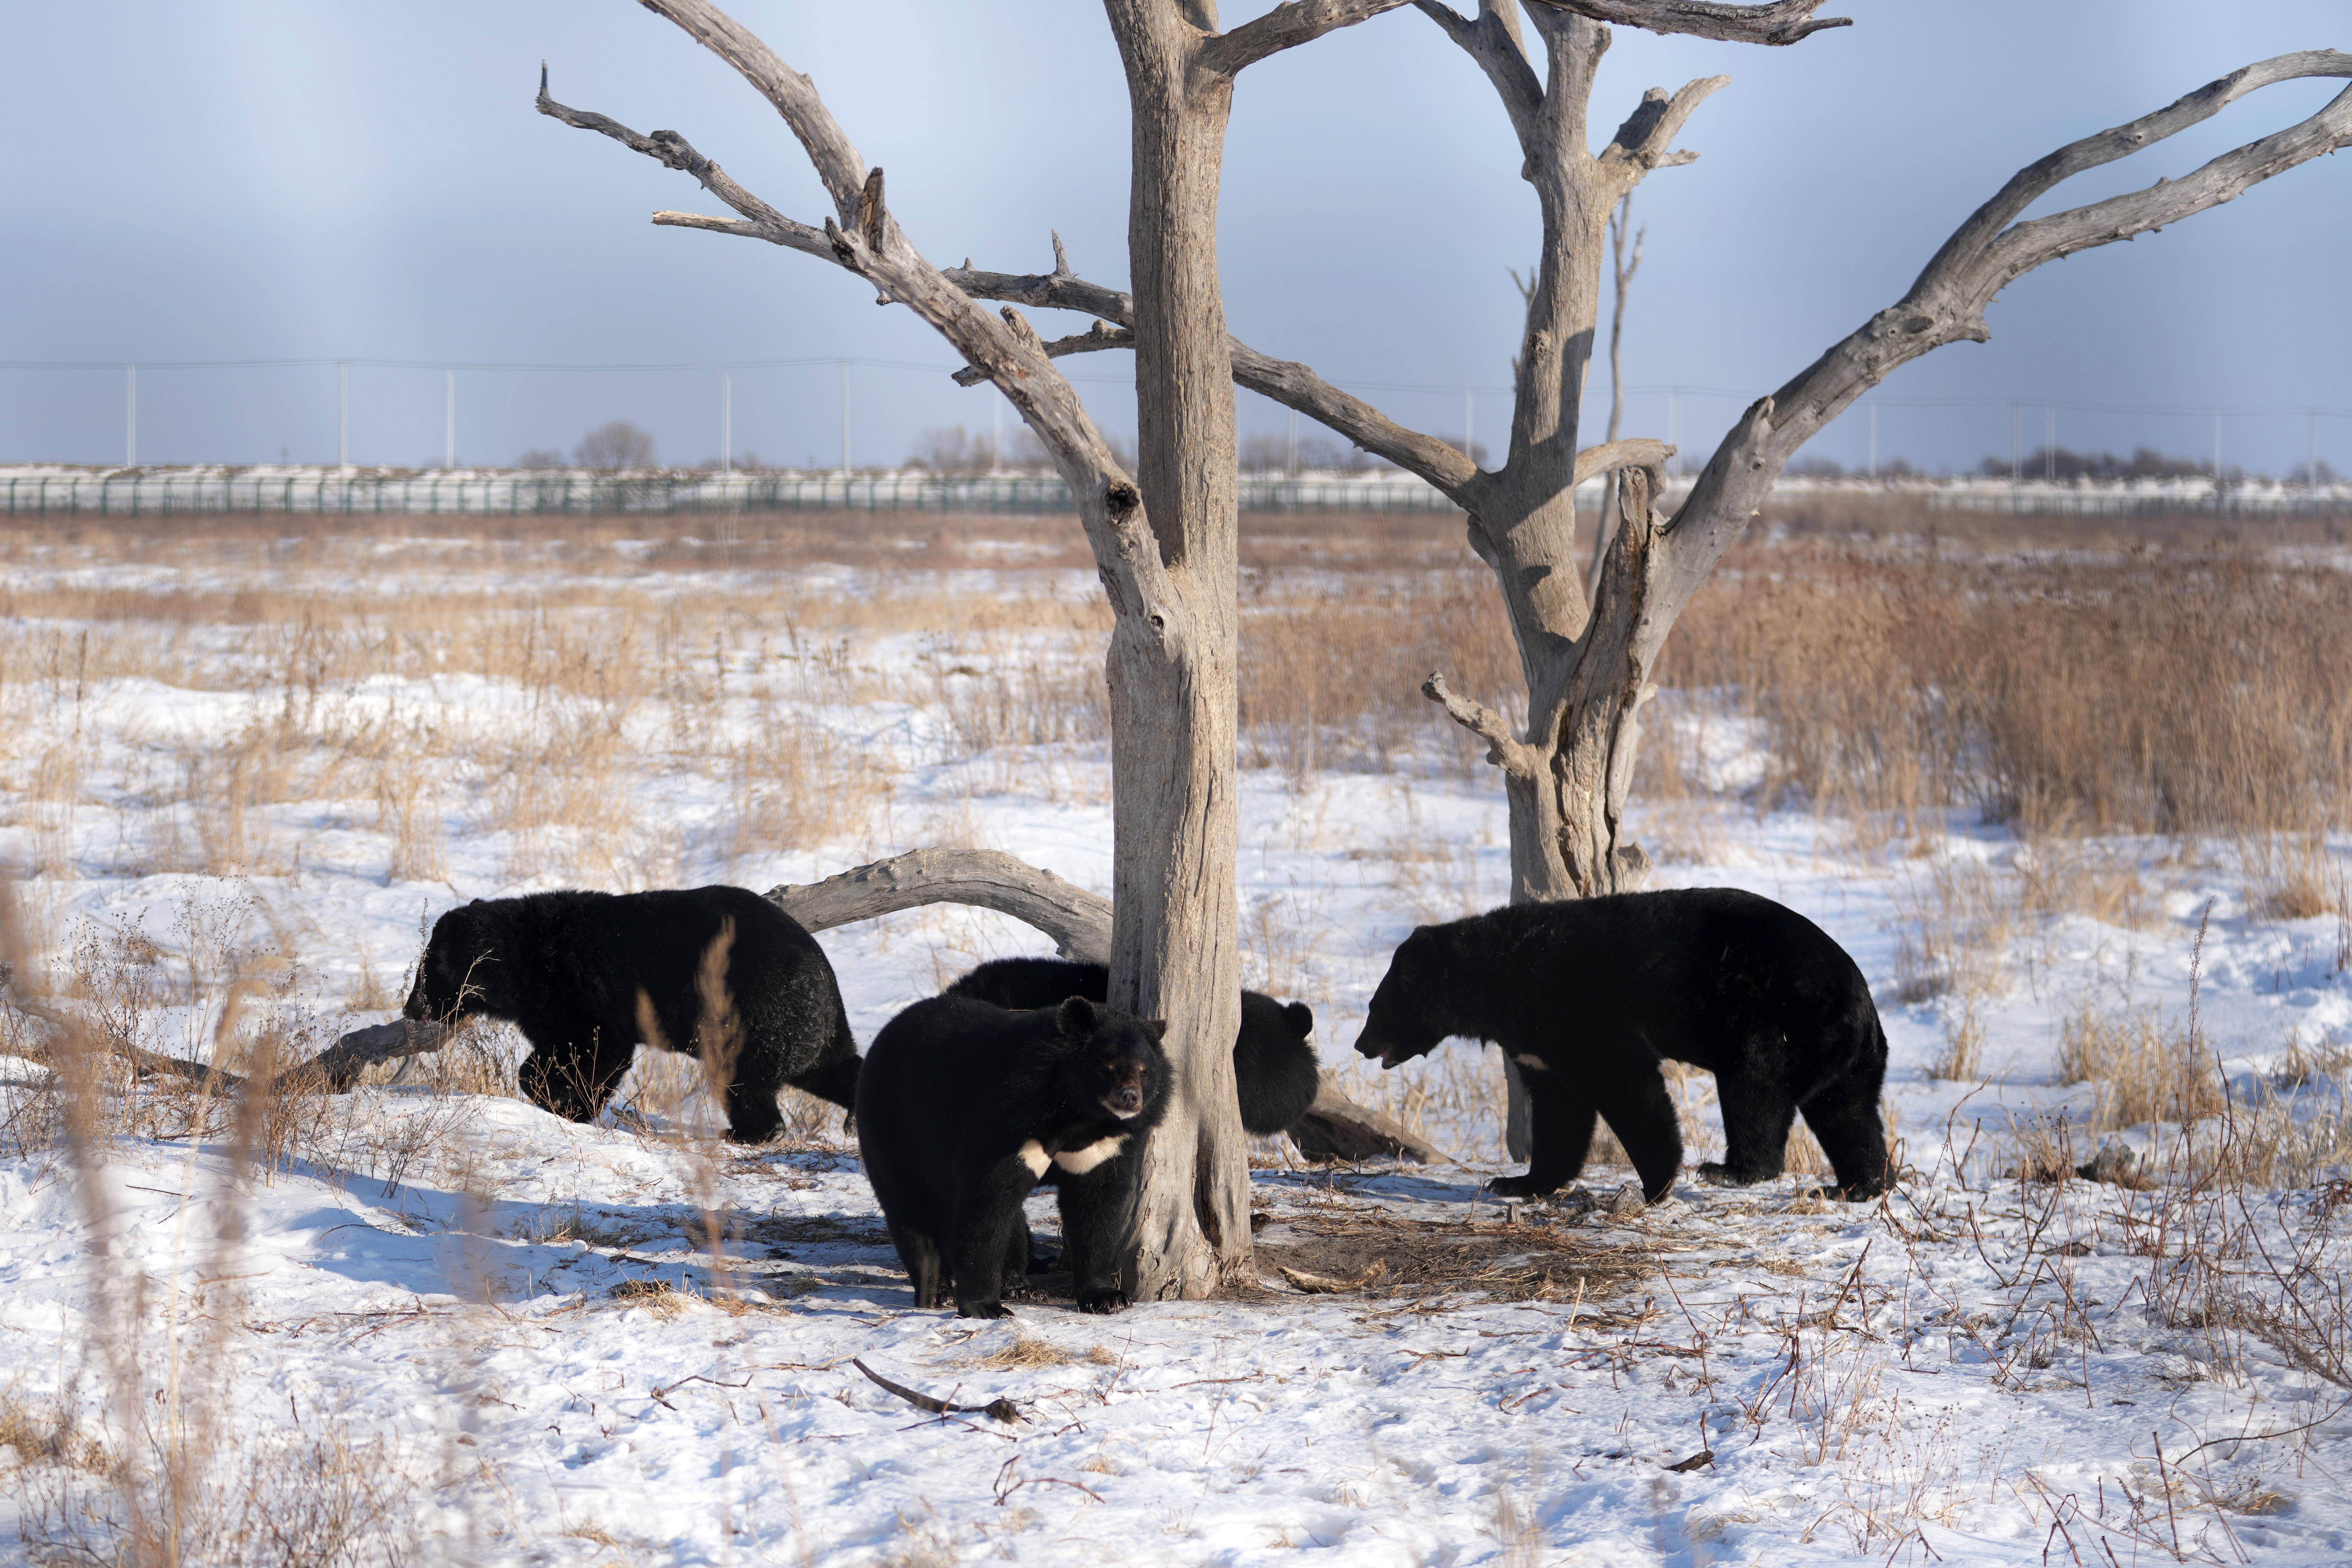 摄探秘野熊园位于华夏东极黑龙江省抚远市,该野熊园以保护黑熊